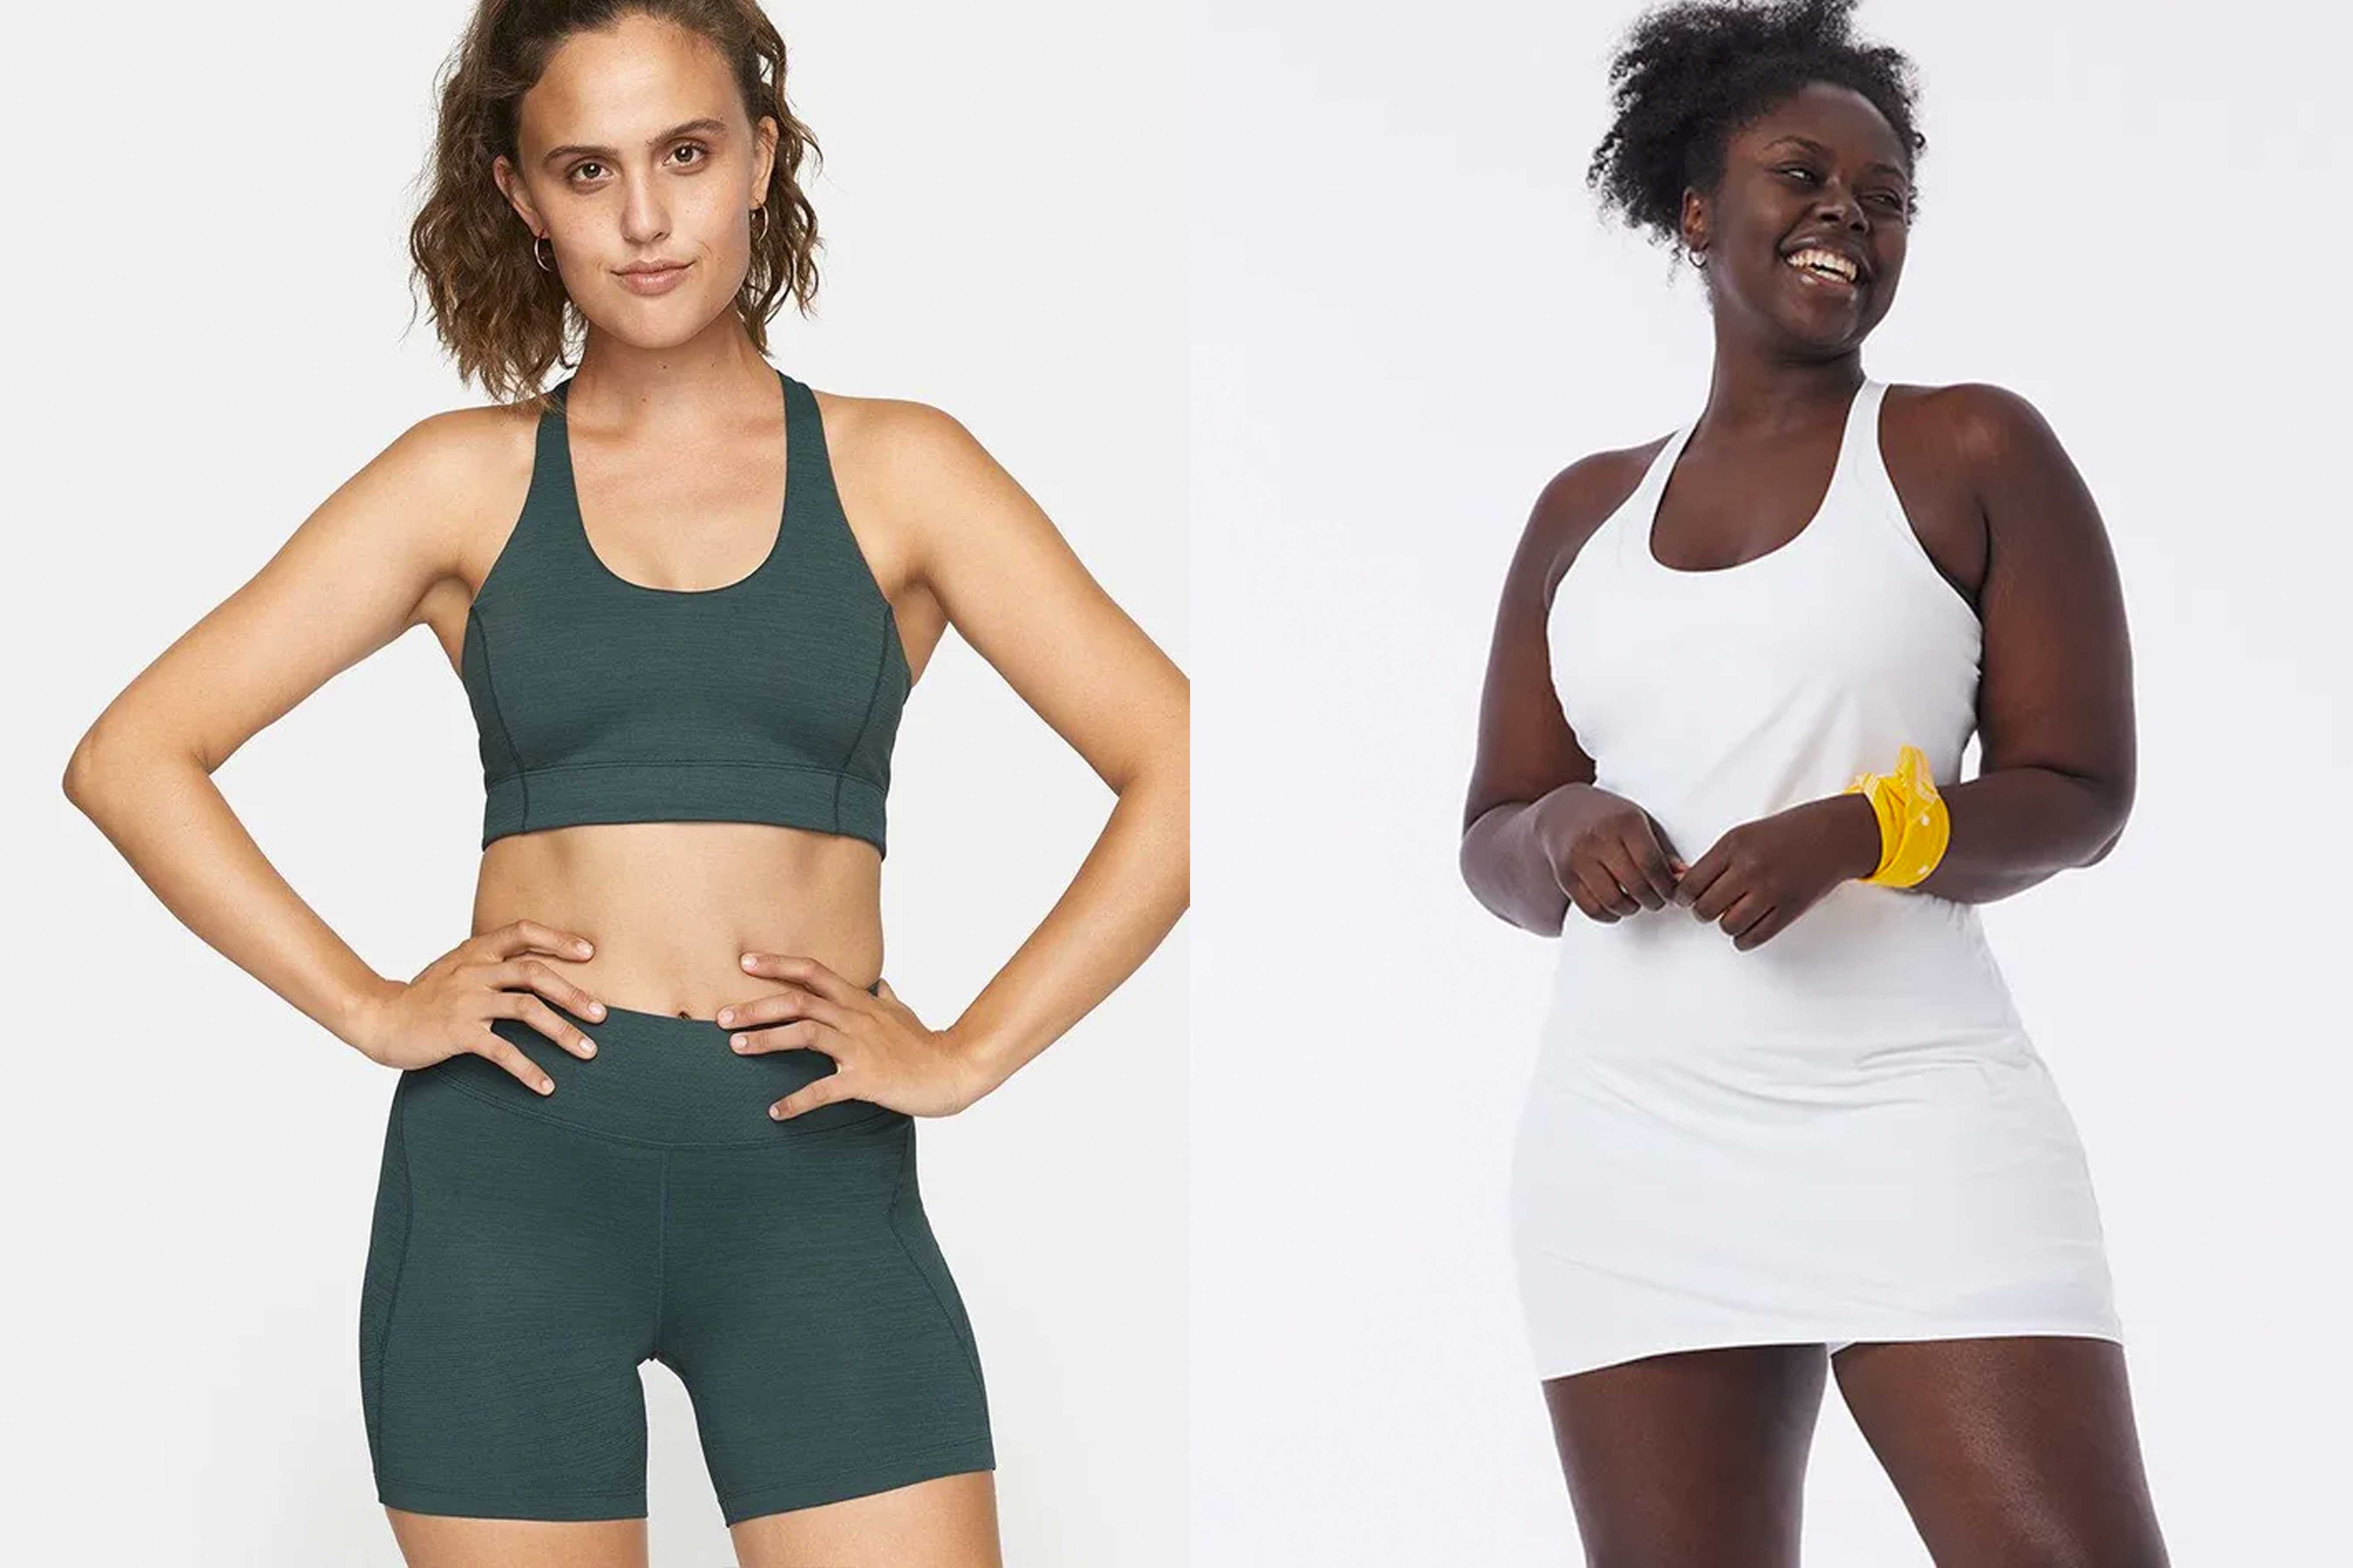 The Varieties Of Women's Athletic Wear